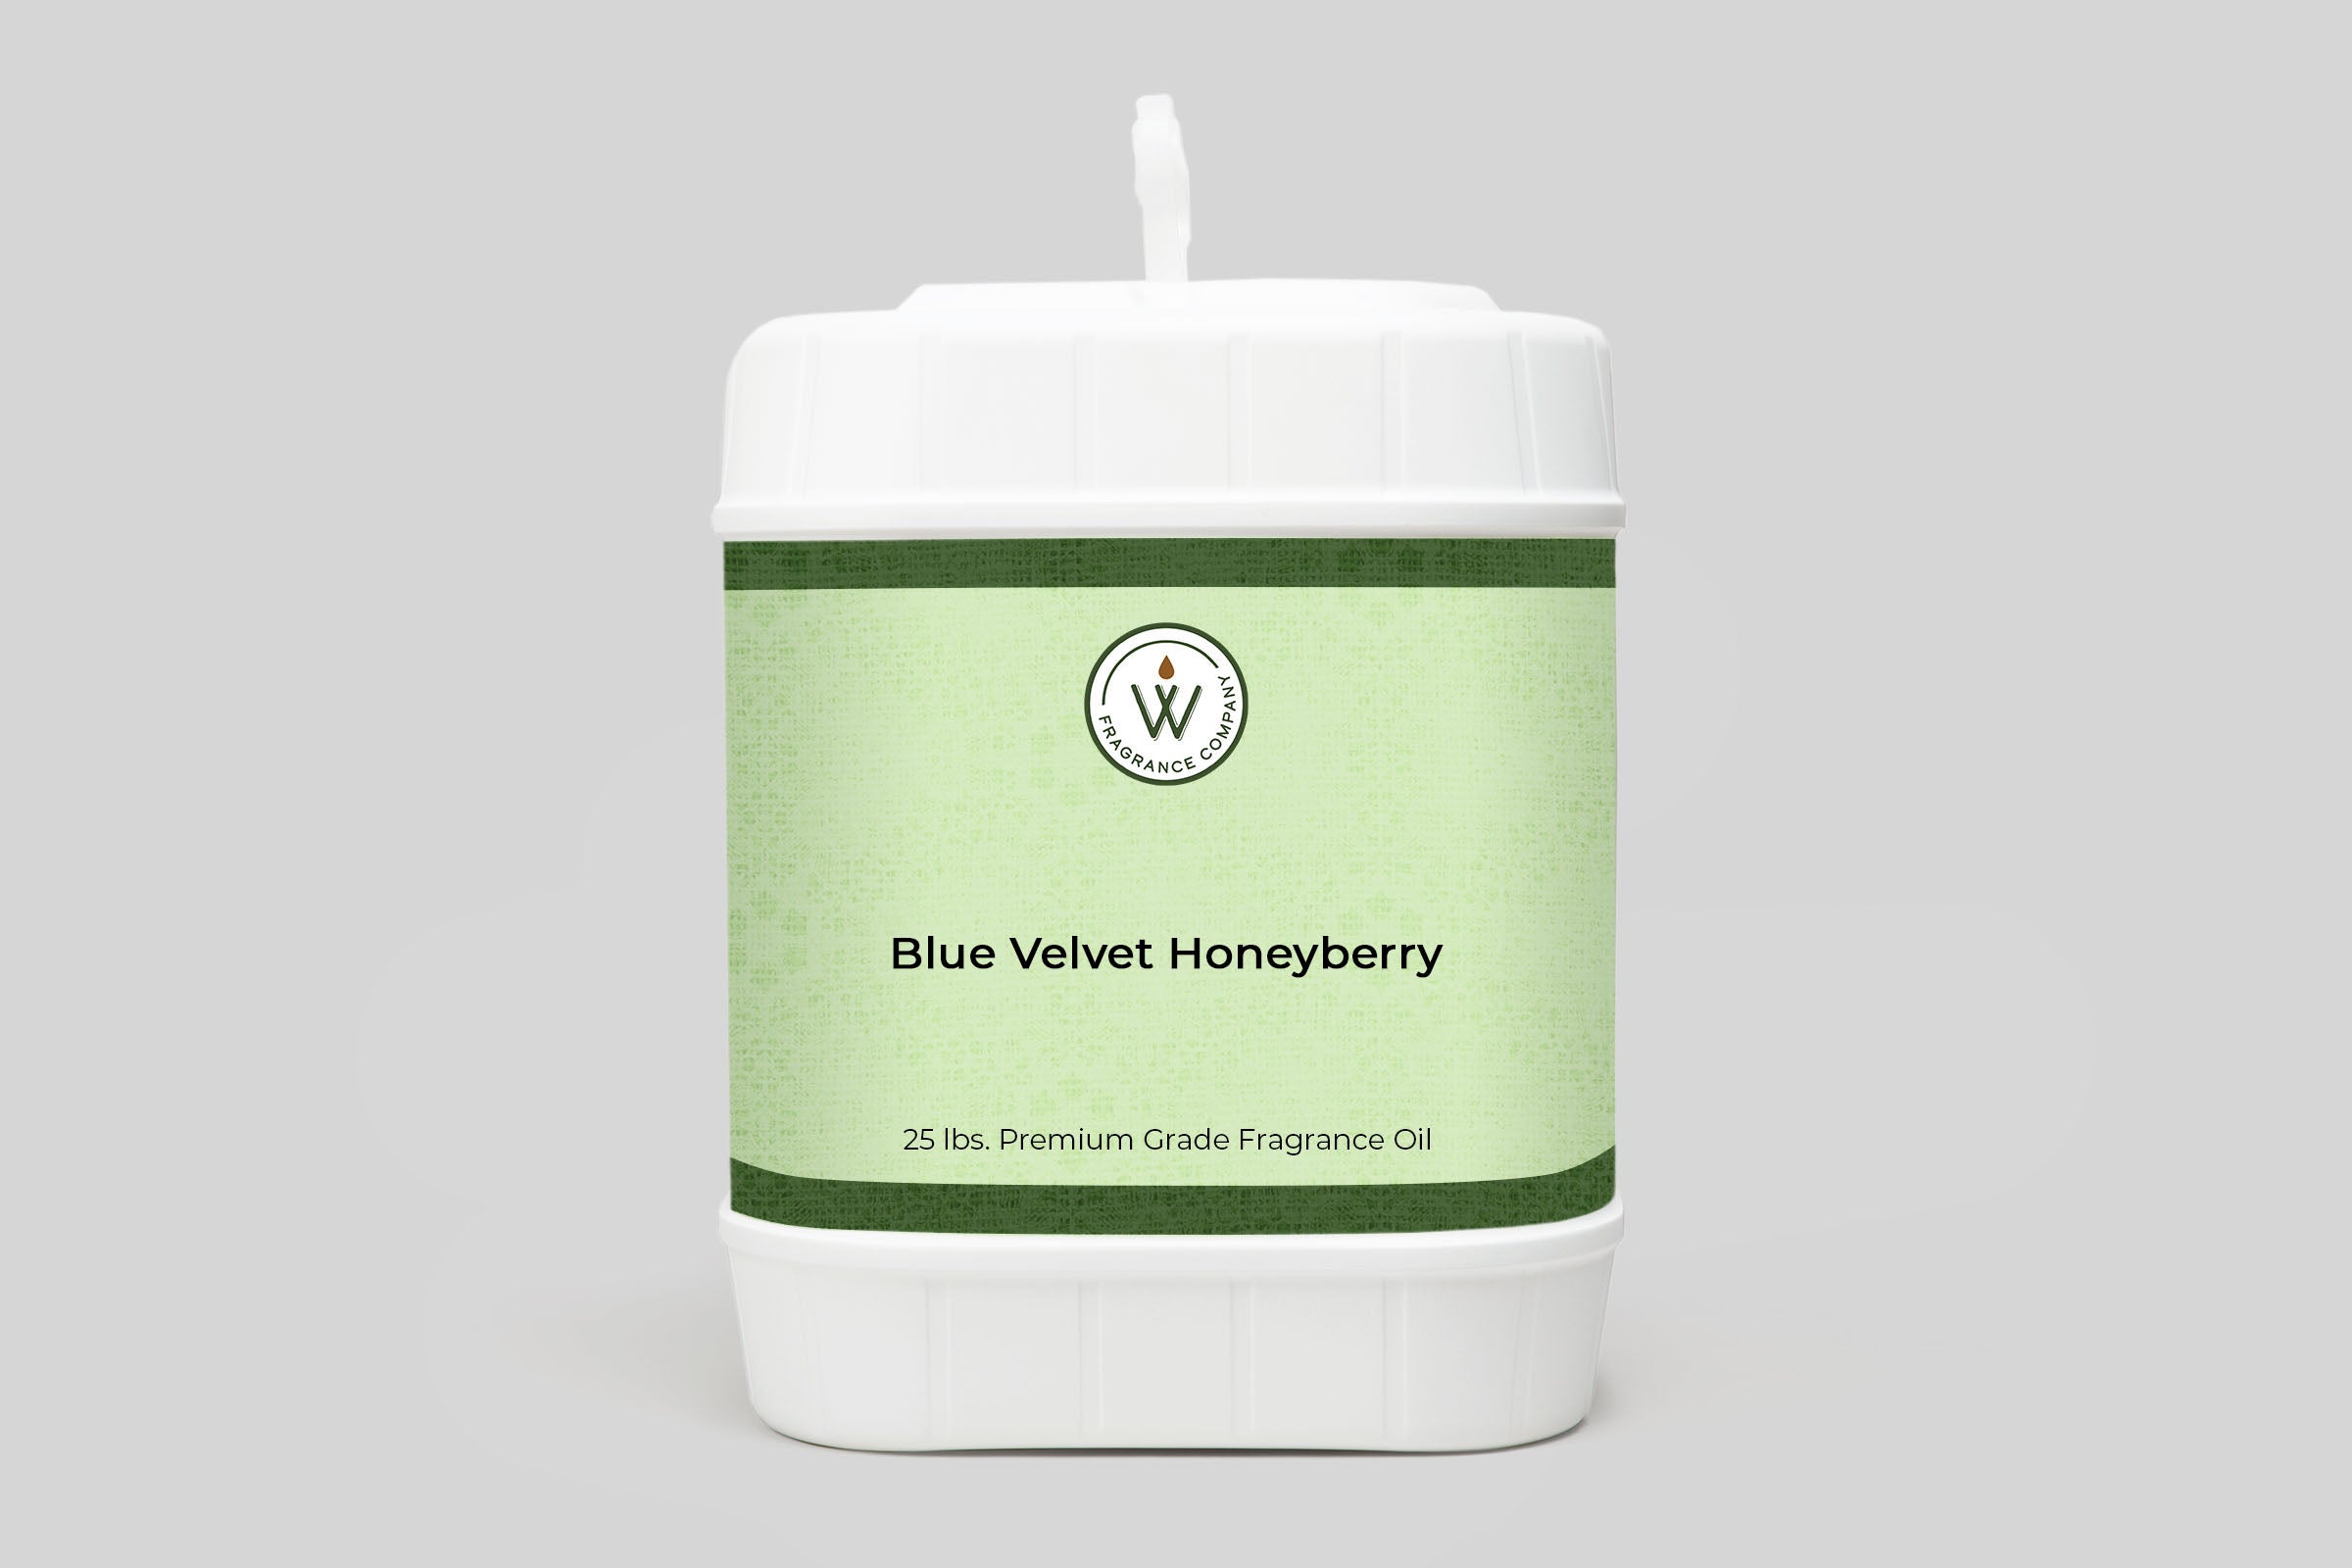 Blue Velvet Honeyberry Fragrance Oil